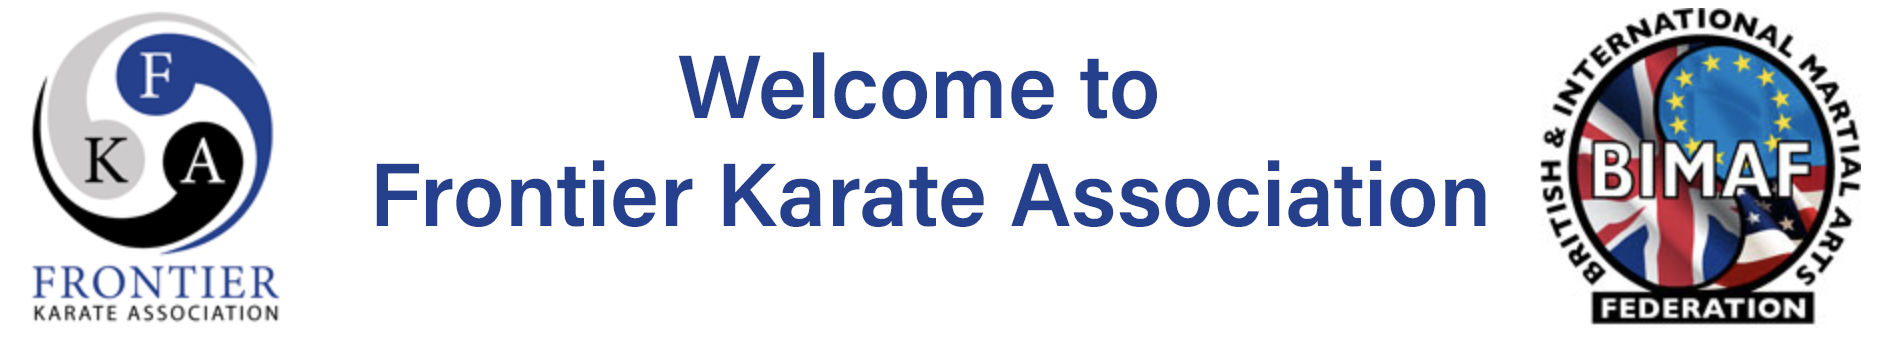 Frontier Karate Association